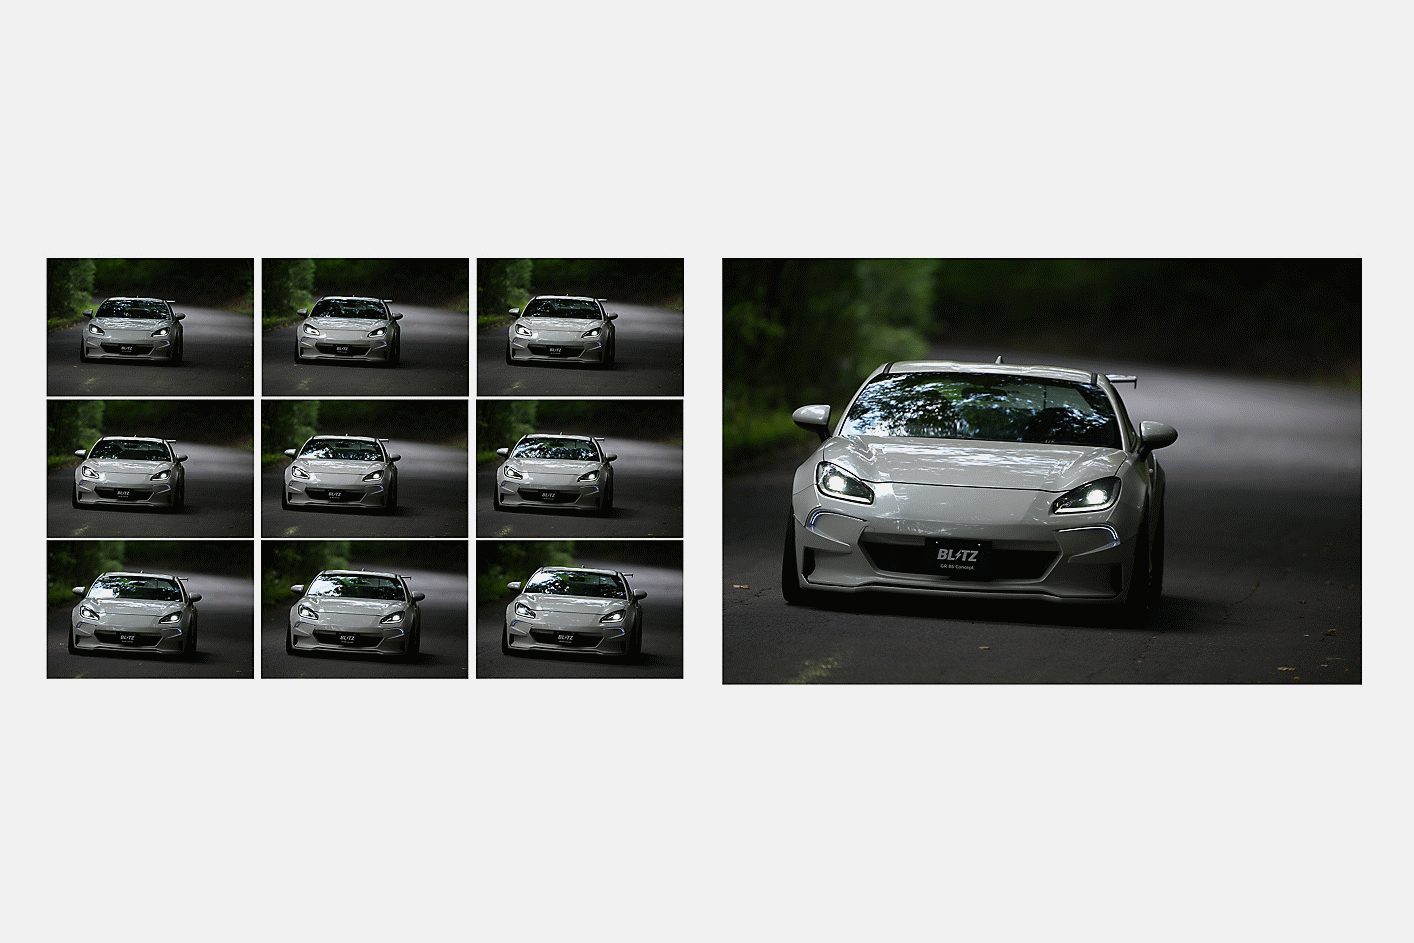 Bilder eines Autos, die als Serienaufnahmen bei 10 BpS mit AF/AE-Tracking gemacht wurden